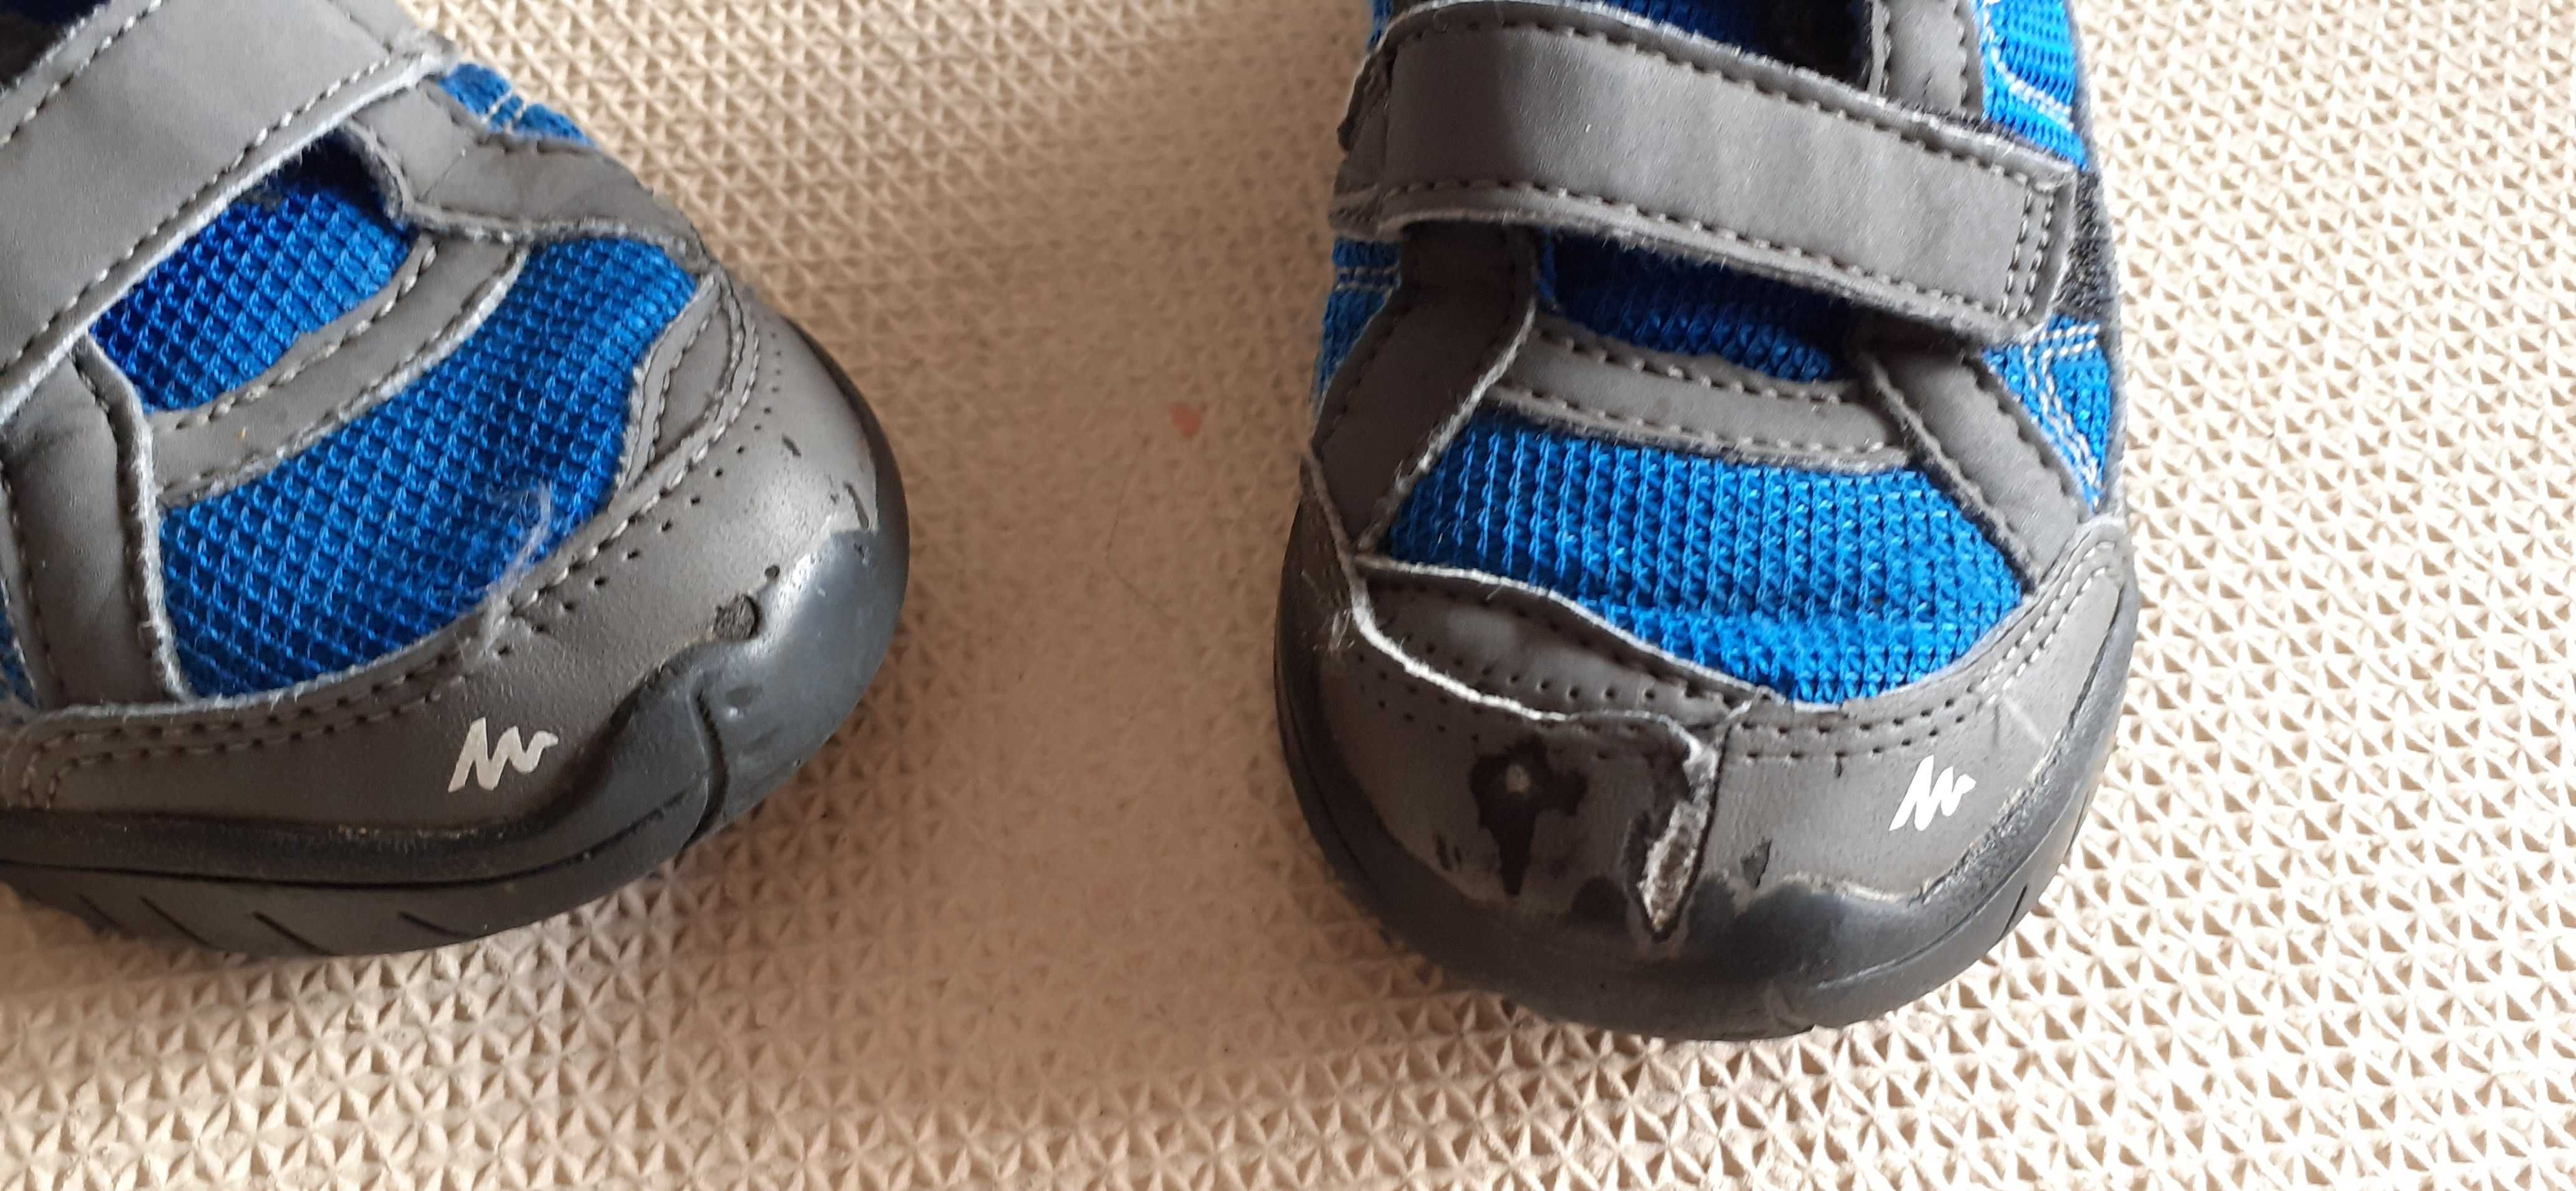 buty Quechua adidasy dla chłopca r. 29 ( wk. 18,5 - 19 cm )